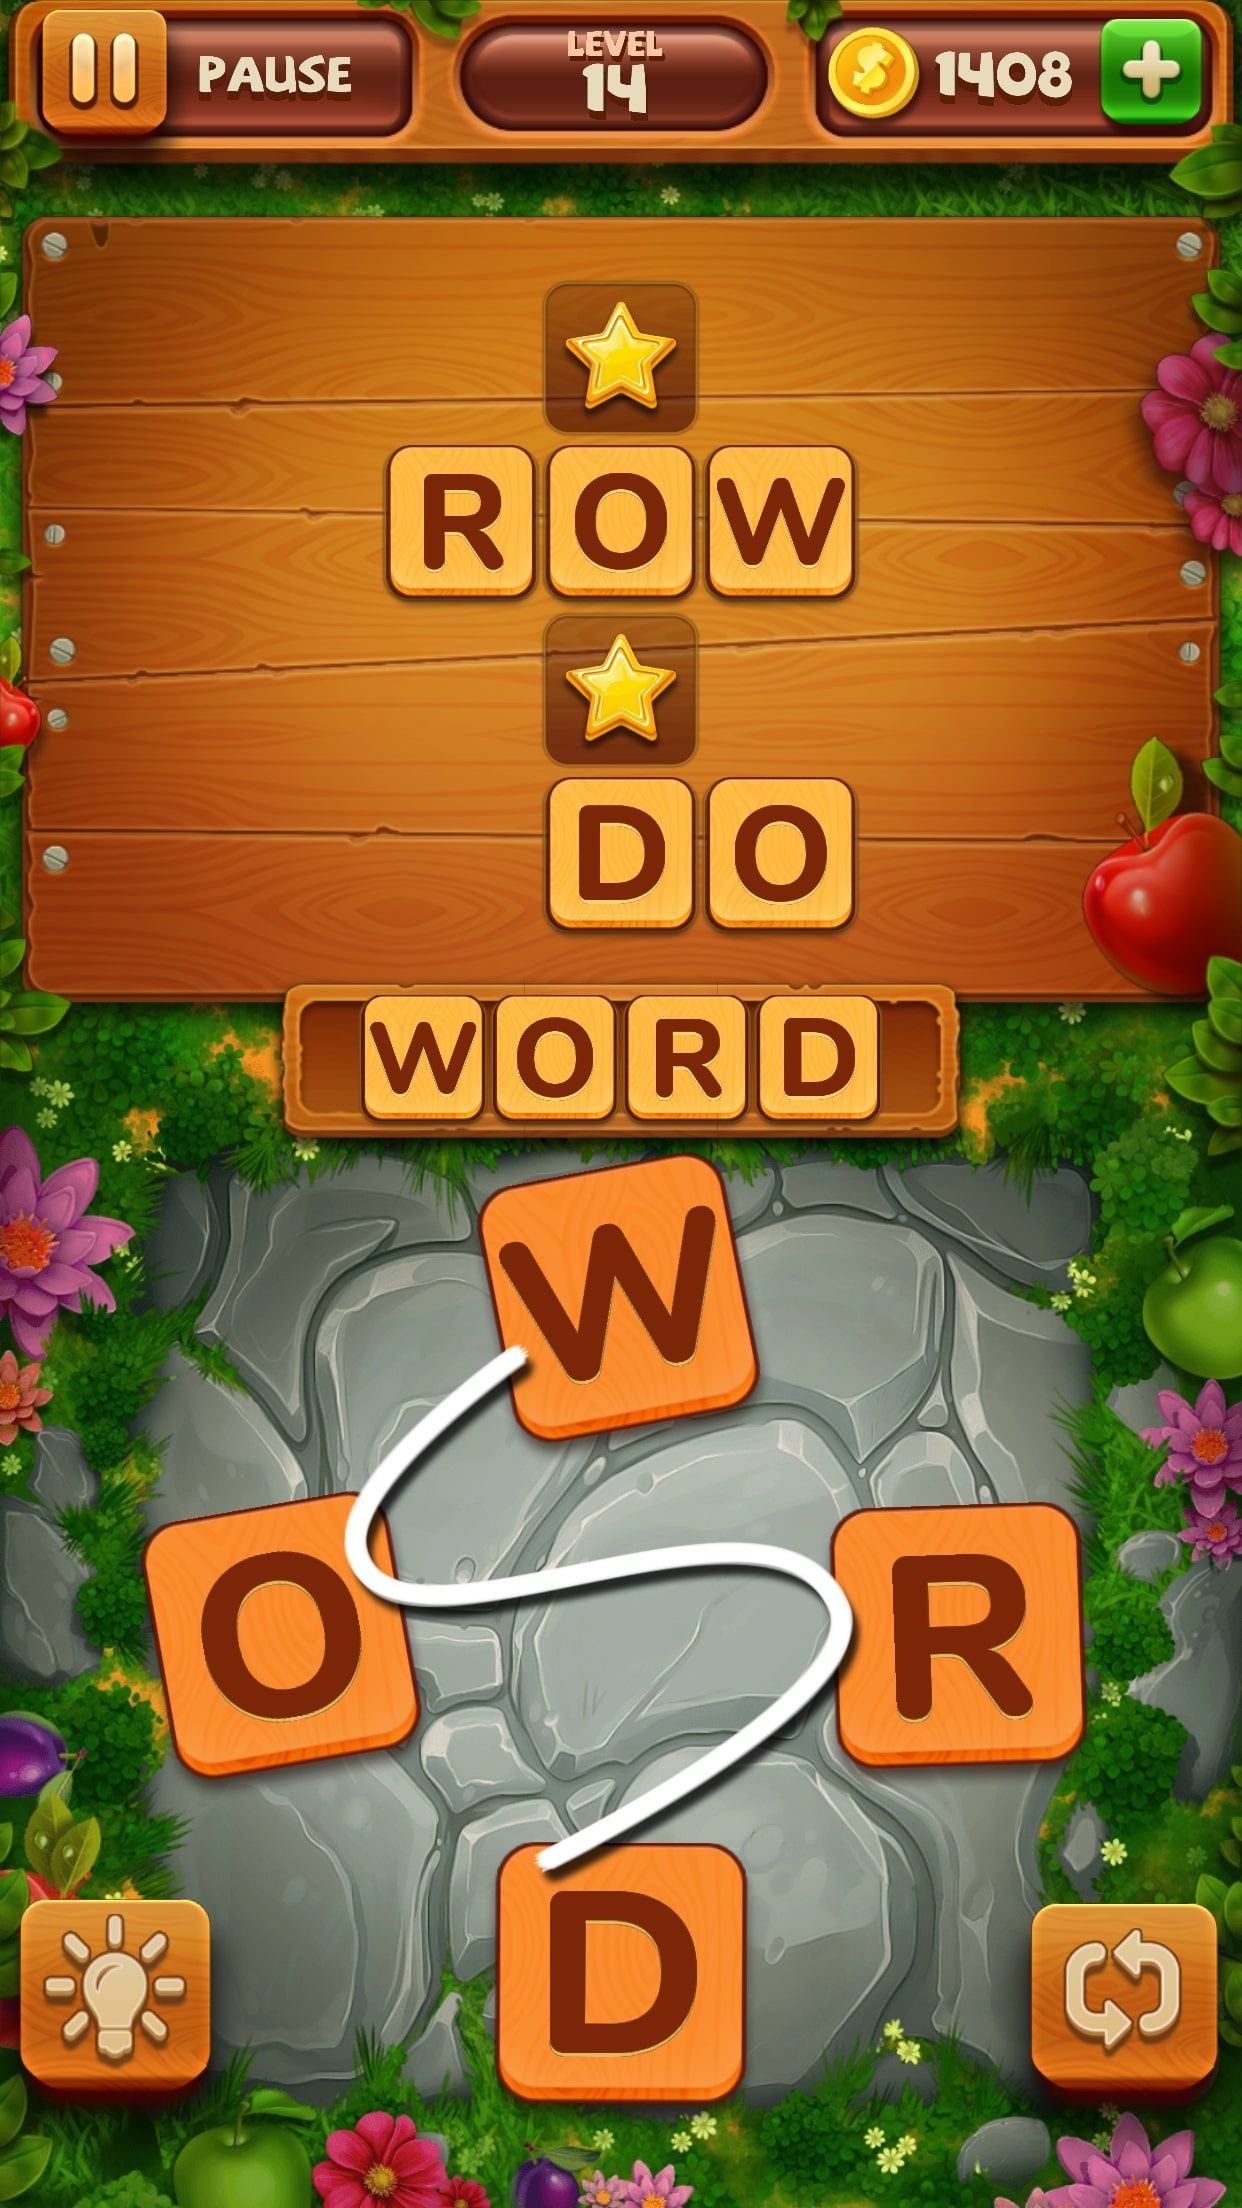 melhores jogos de palavras-android-word-yard-level-14